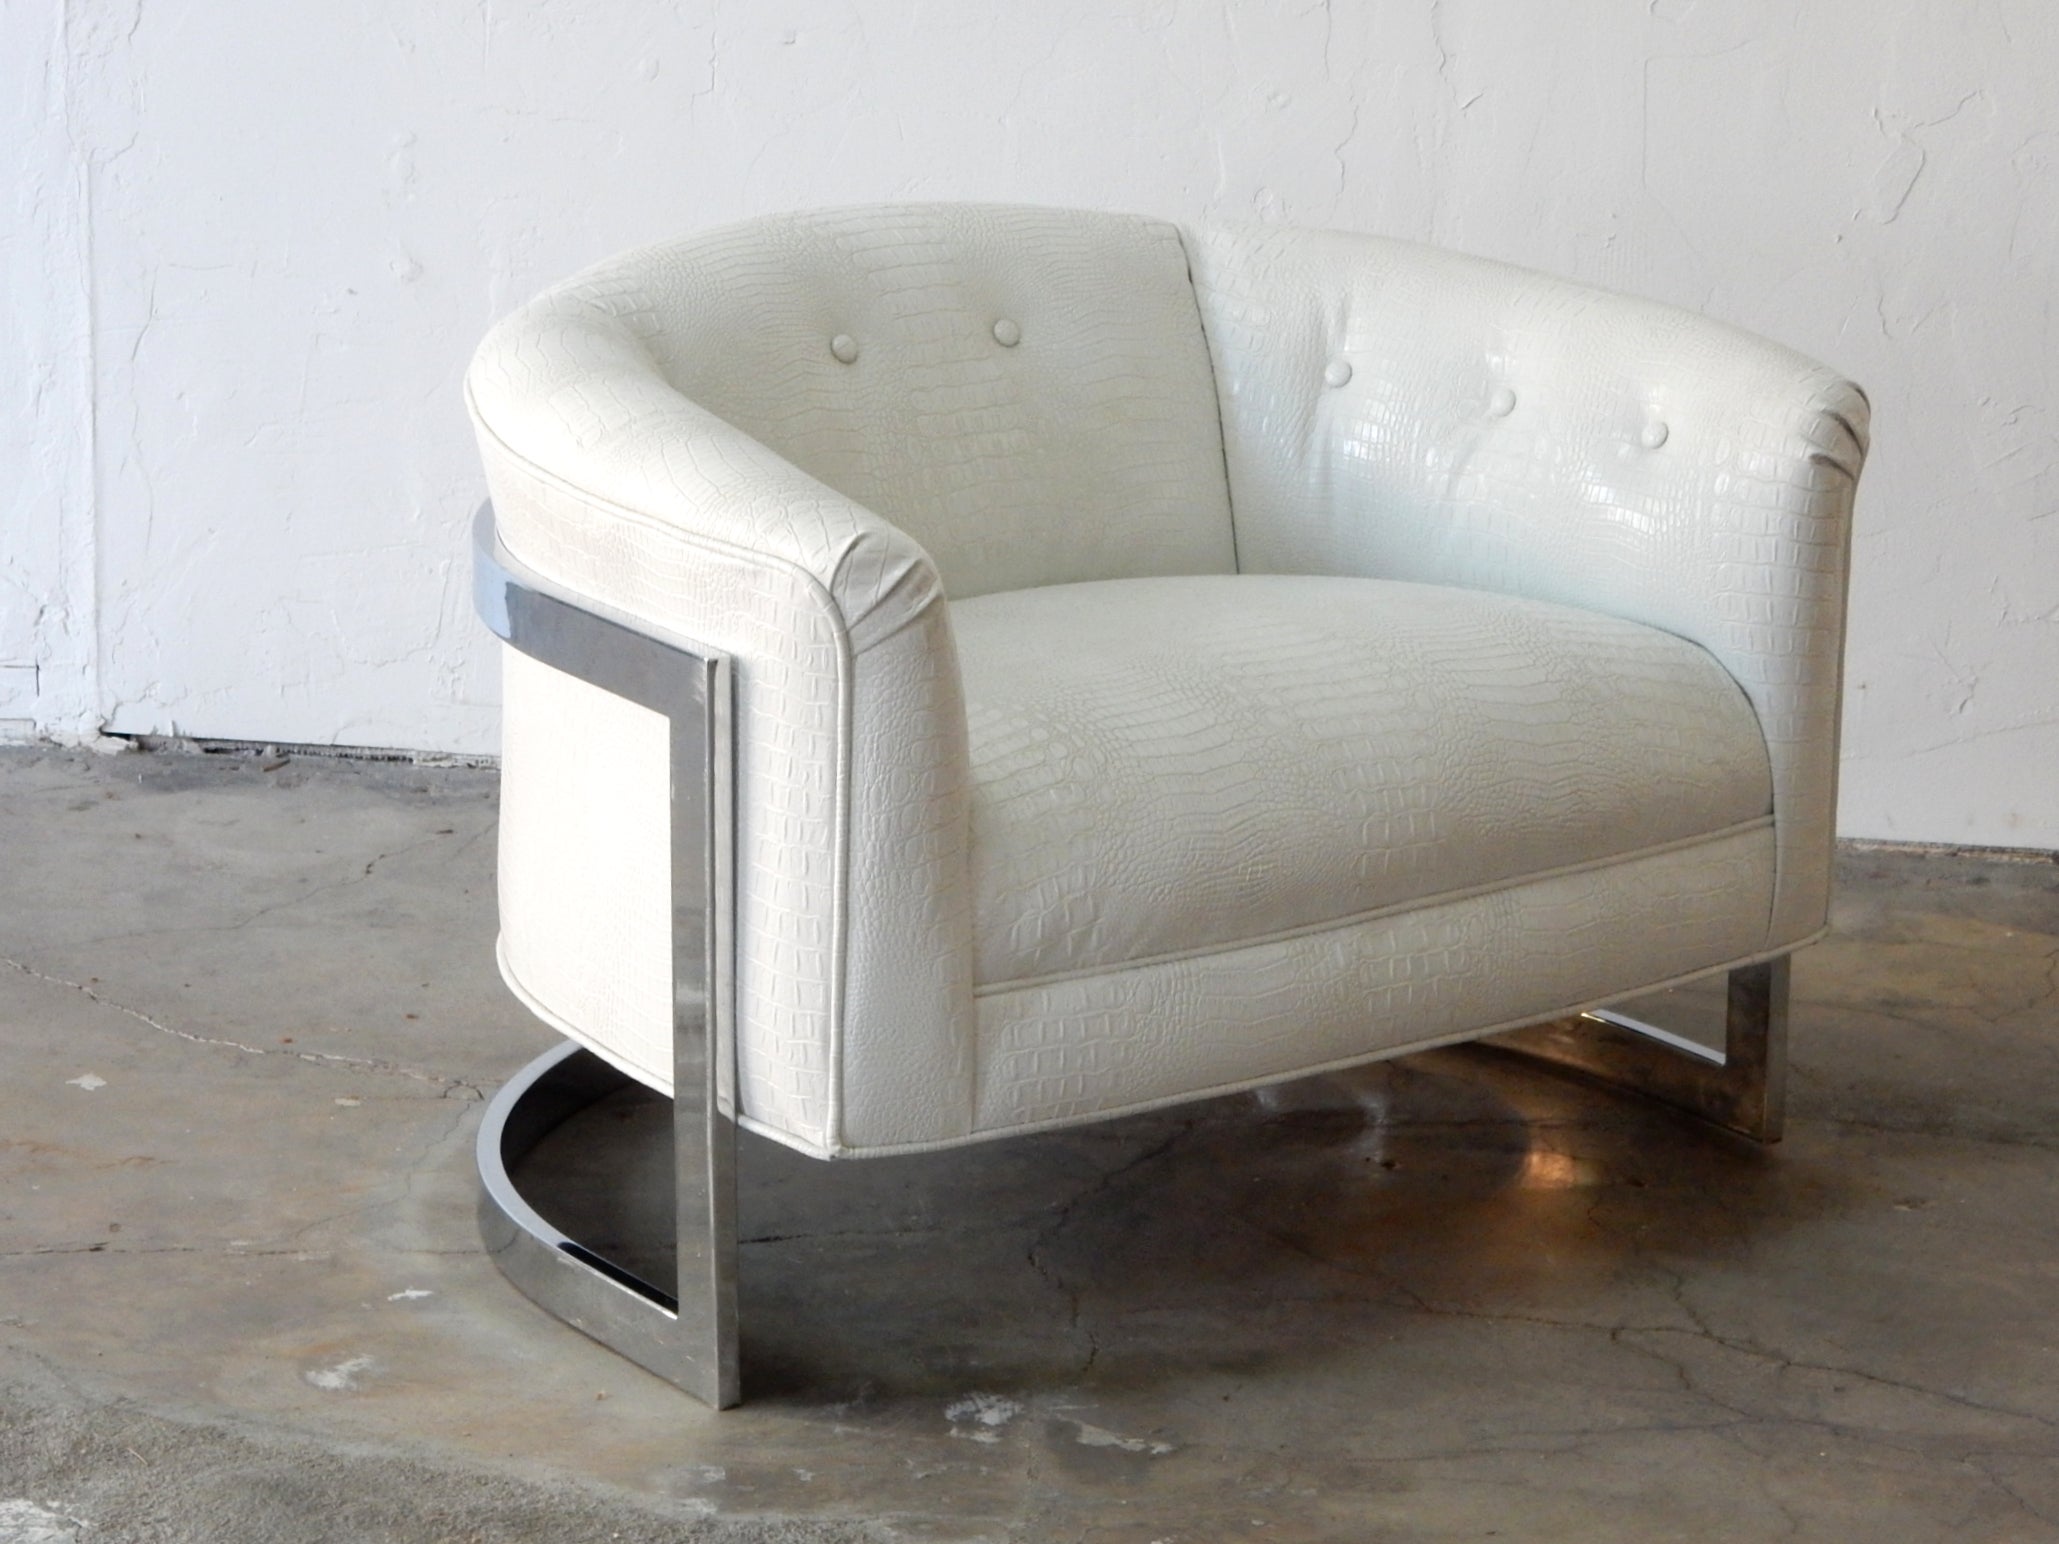 Très grande chaise baignoire flottante avec structure en acier chromé habillée d'un revêtement en vinyle faux alligator albinos.
Cette fabuleuse chaise est nouvellement tapissée et très propre.